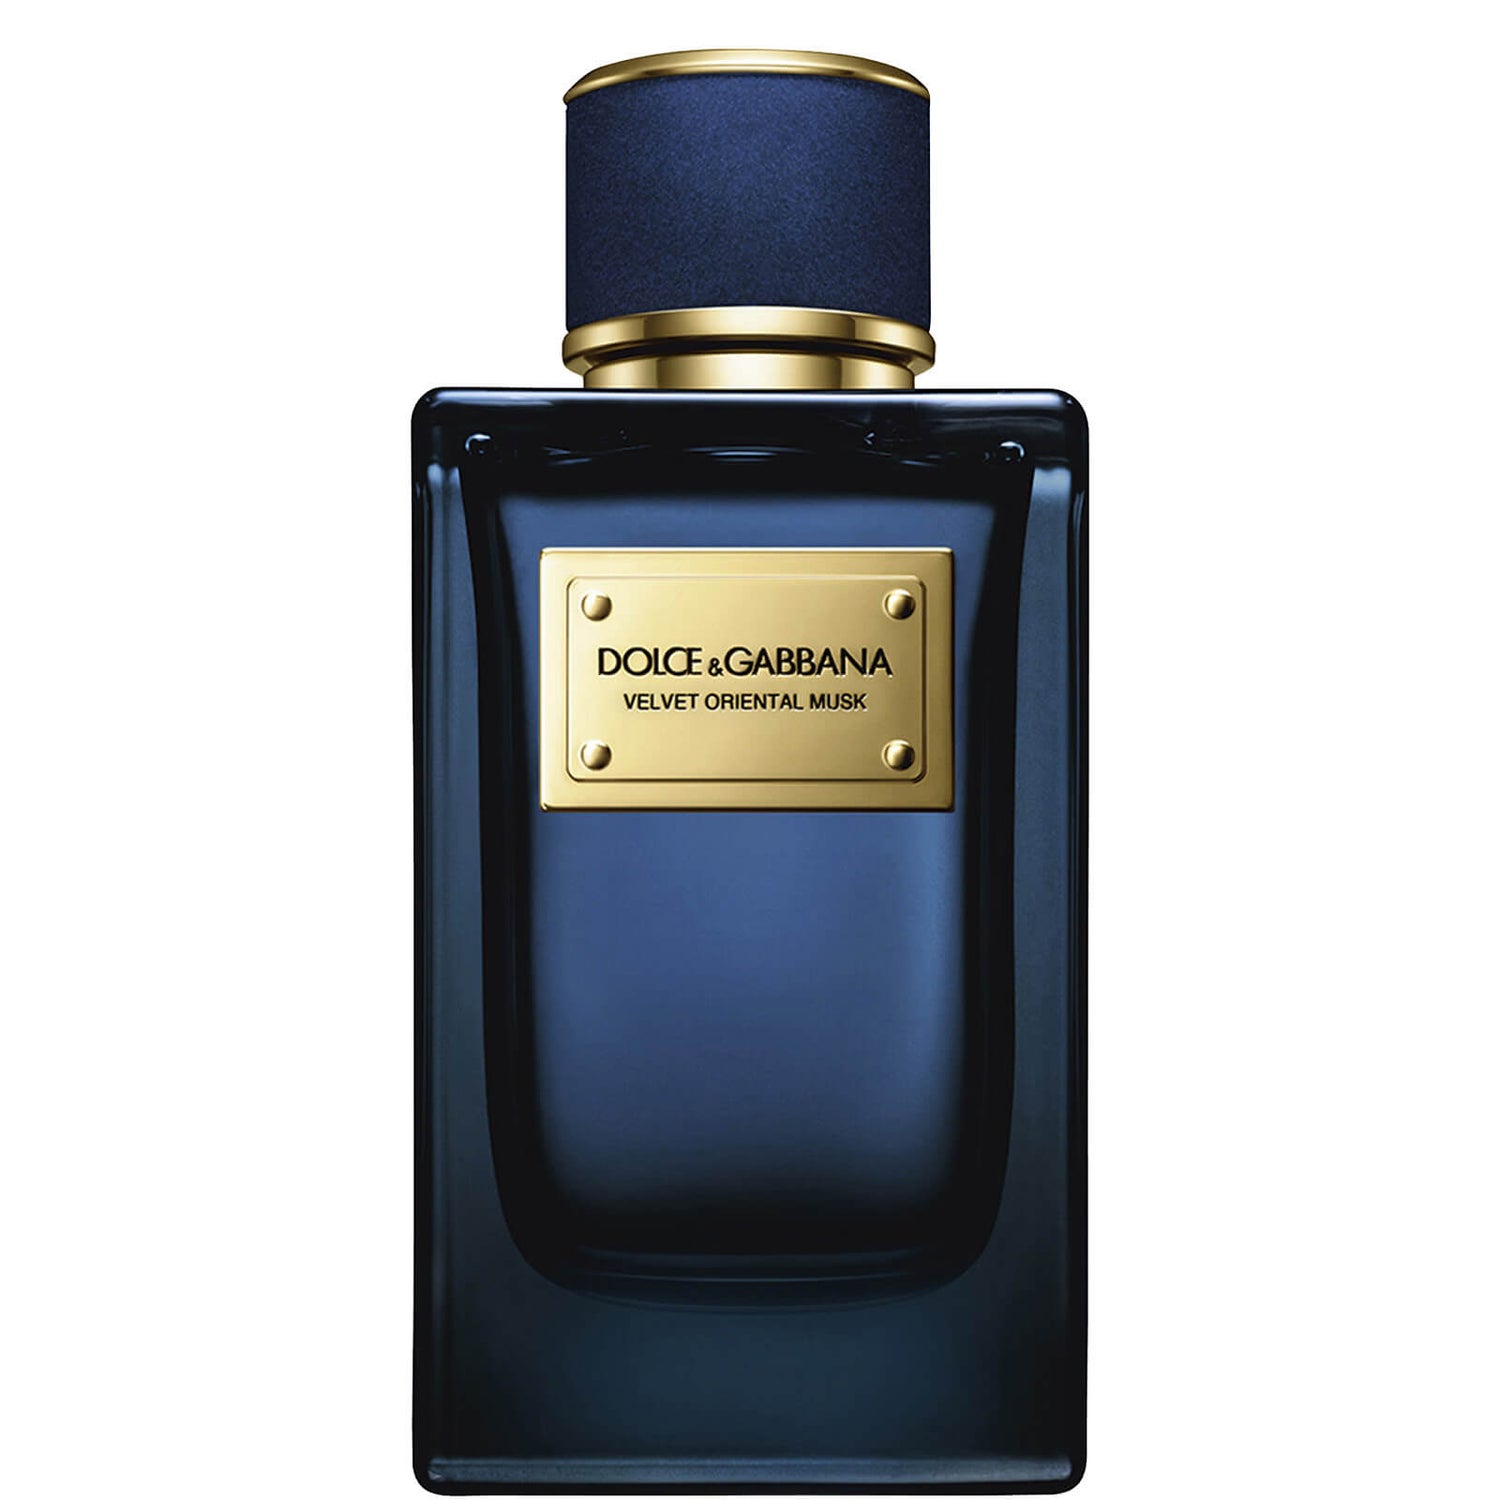 Dolce&Gabbana Velvet Oriental Musk Eau de Parfum - 150 ml